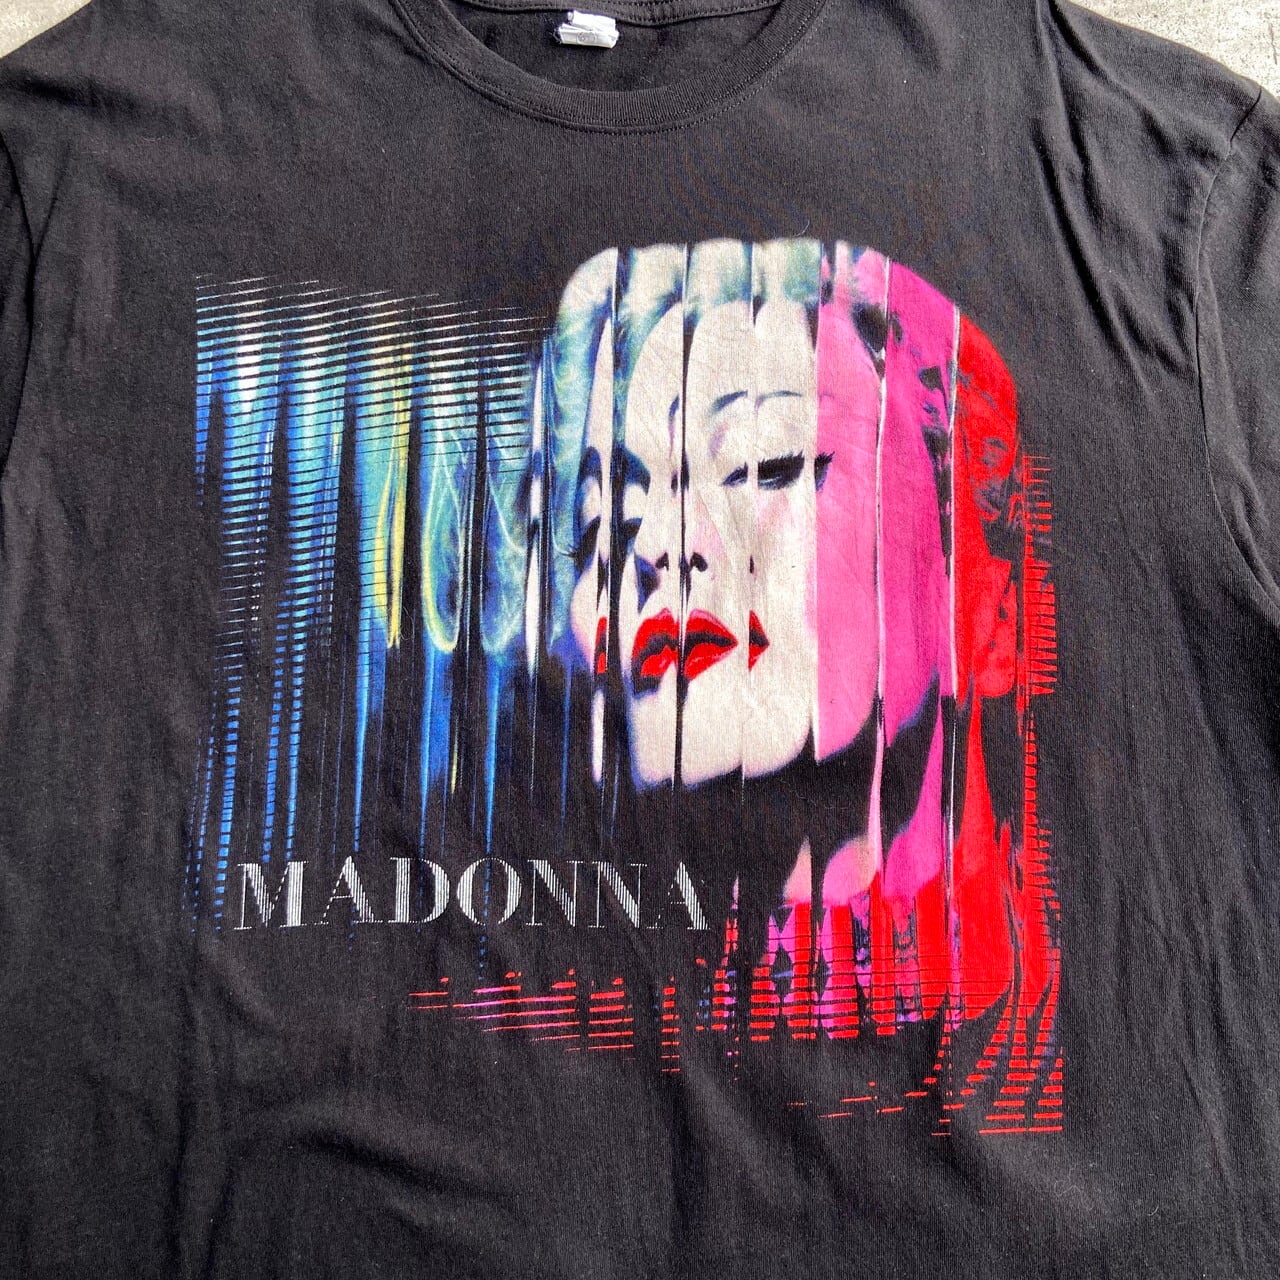 Madonna マドンナ 2004 ツアー tシャツ - メンズ